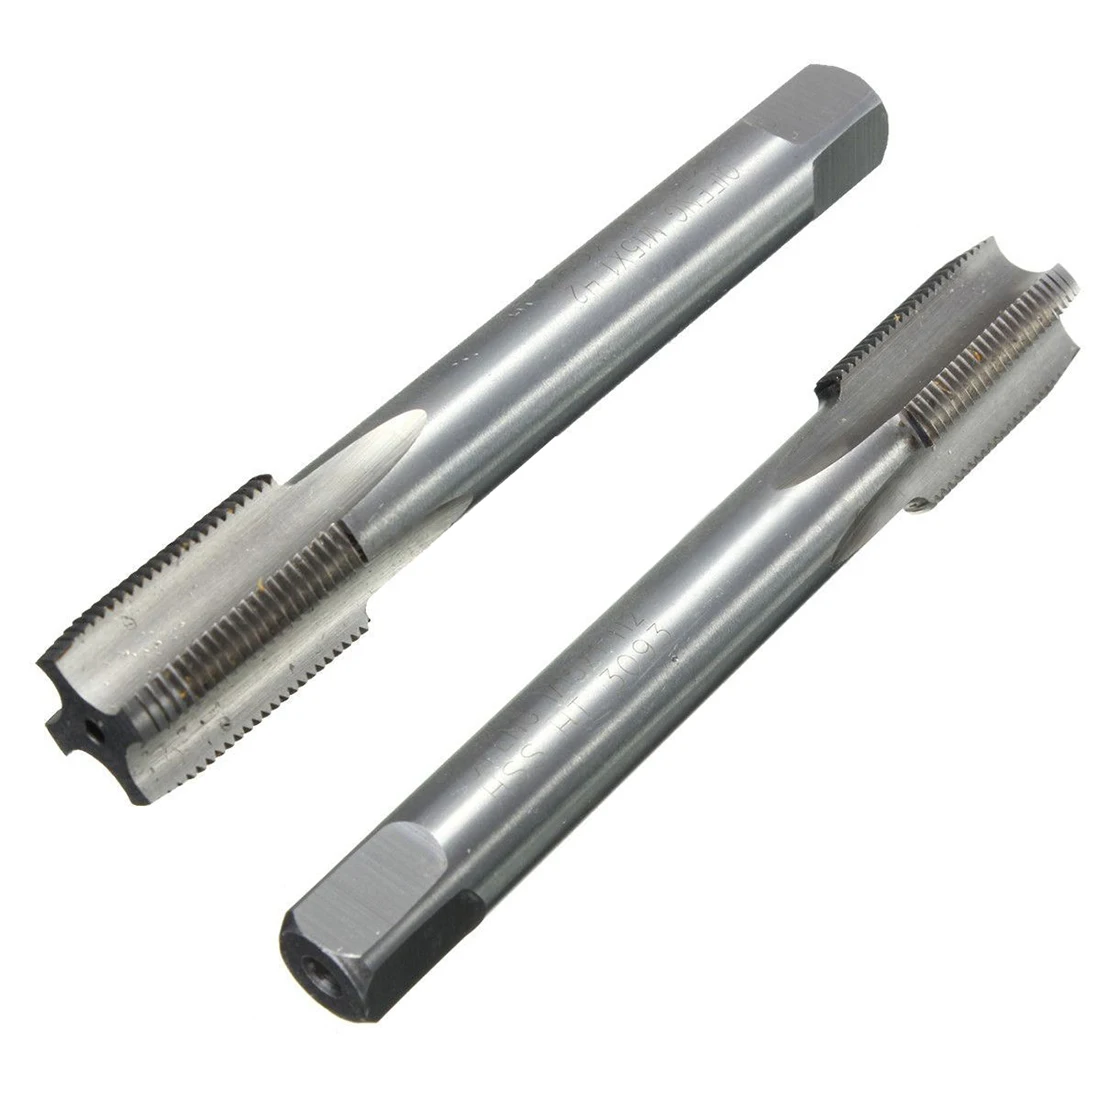 Taper and Plug Thread Cutter TD030 Tungsten Steel M6 x 1mm Metric Tap Set 